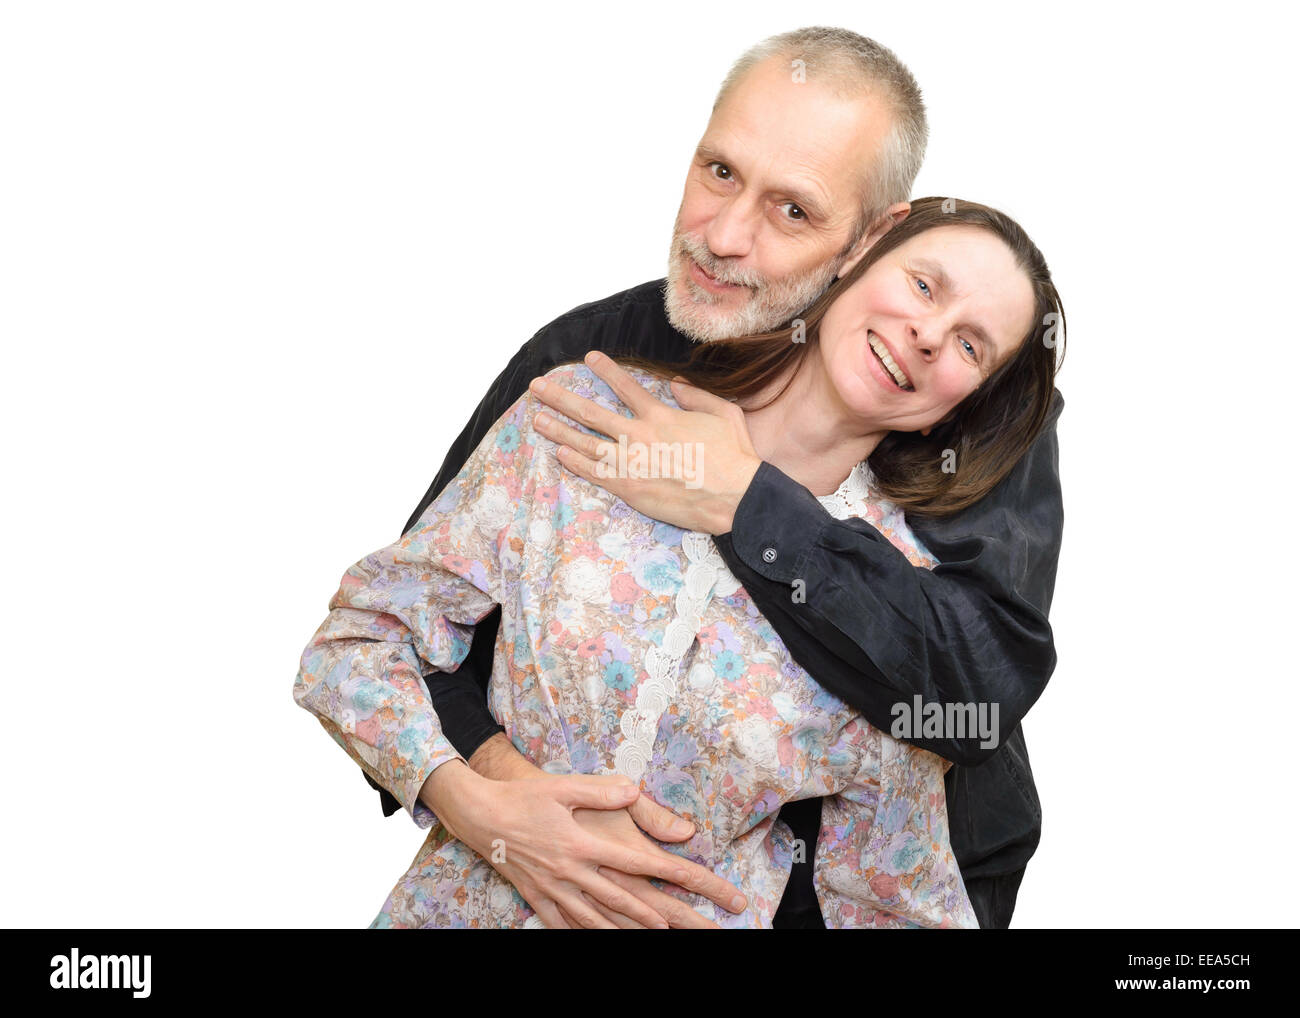 Glücklich Erwachsenen Mann und Frau Lächeln für S. Valentin Tag oder ein Jubiläum und umarmen einander. Isoliert auf weißem Hintergrund. Stockfoto